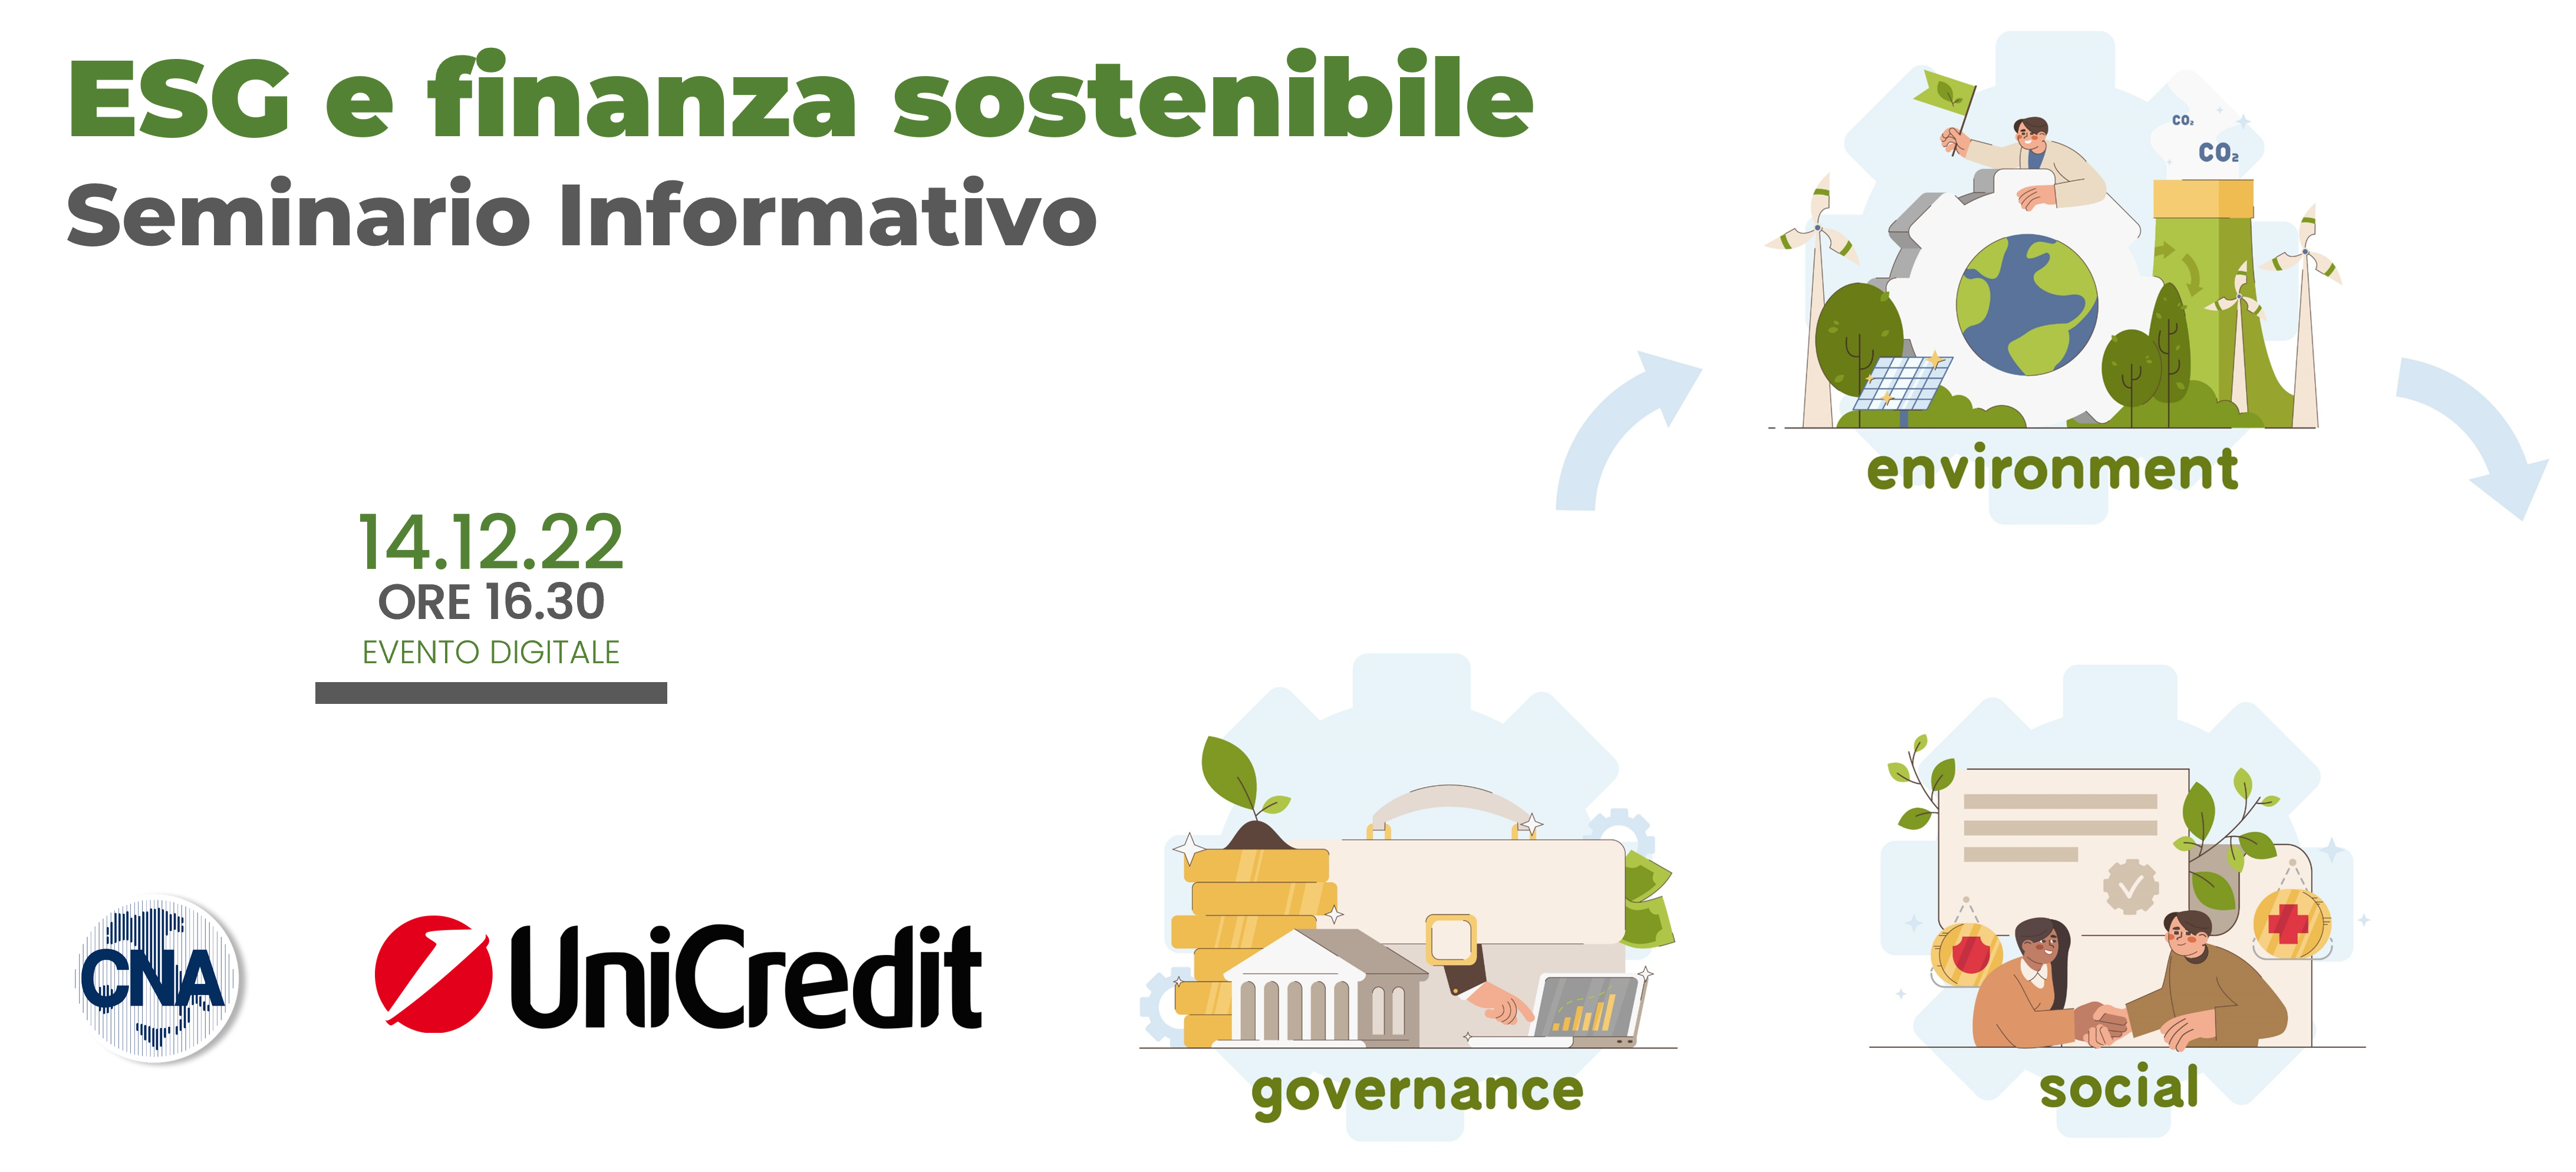 ESG e finanza sostenibile